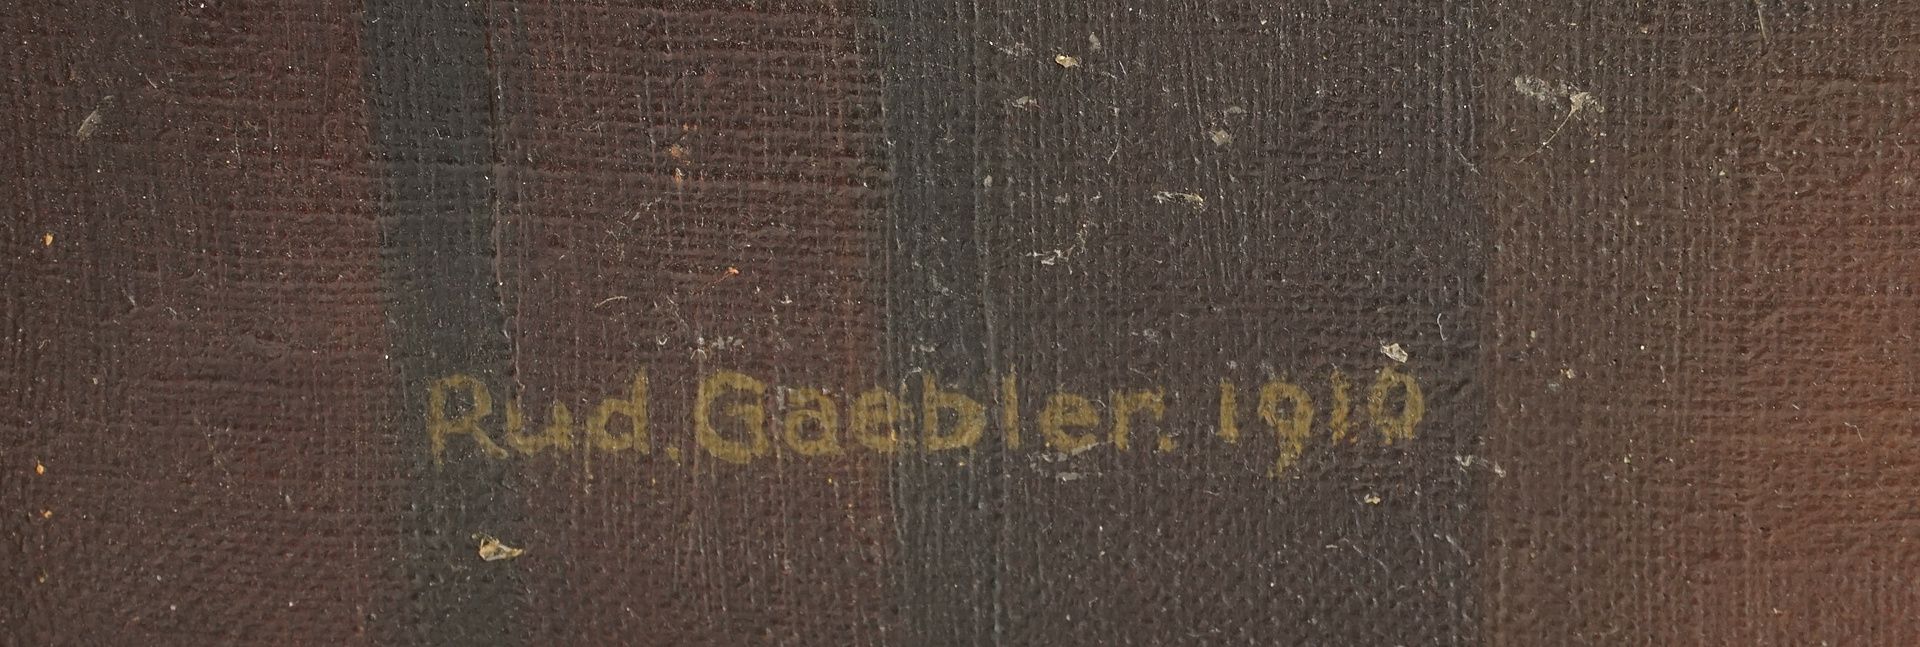 Rud. Gaebler,  Interieur mit strickender Frau - Bild 4 aus 4